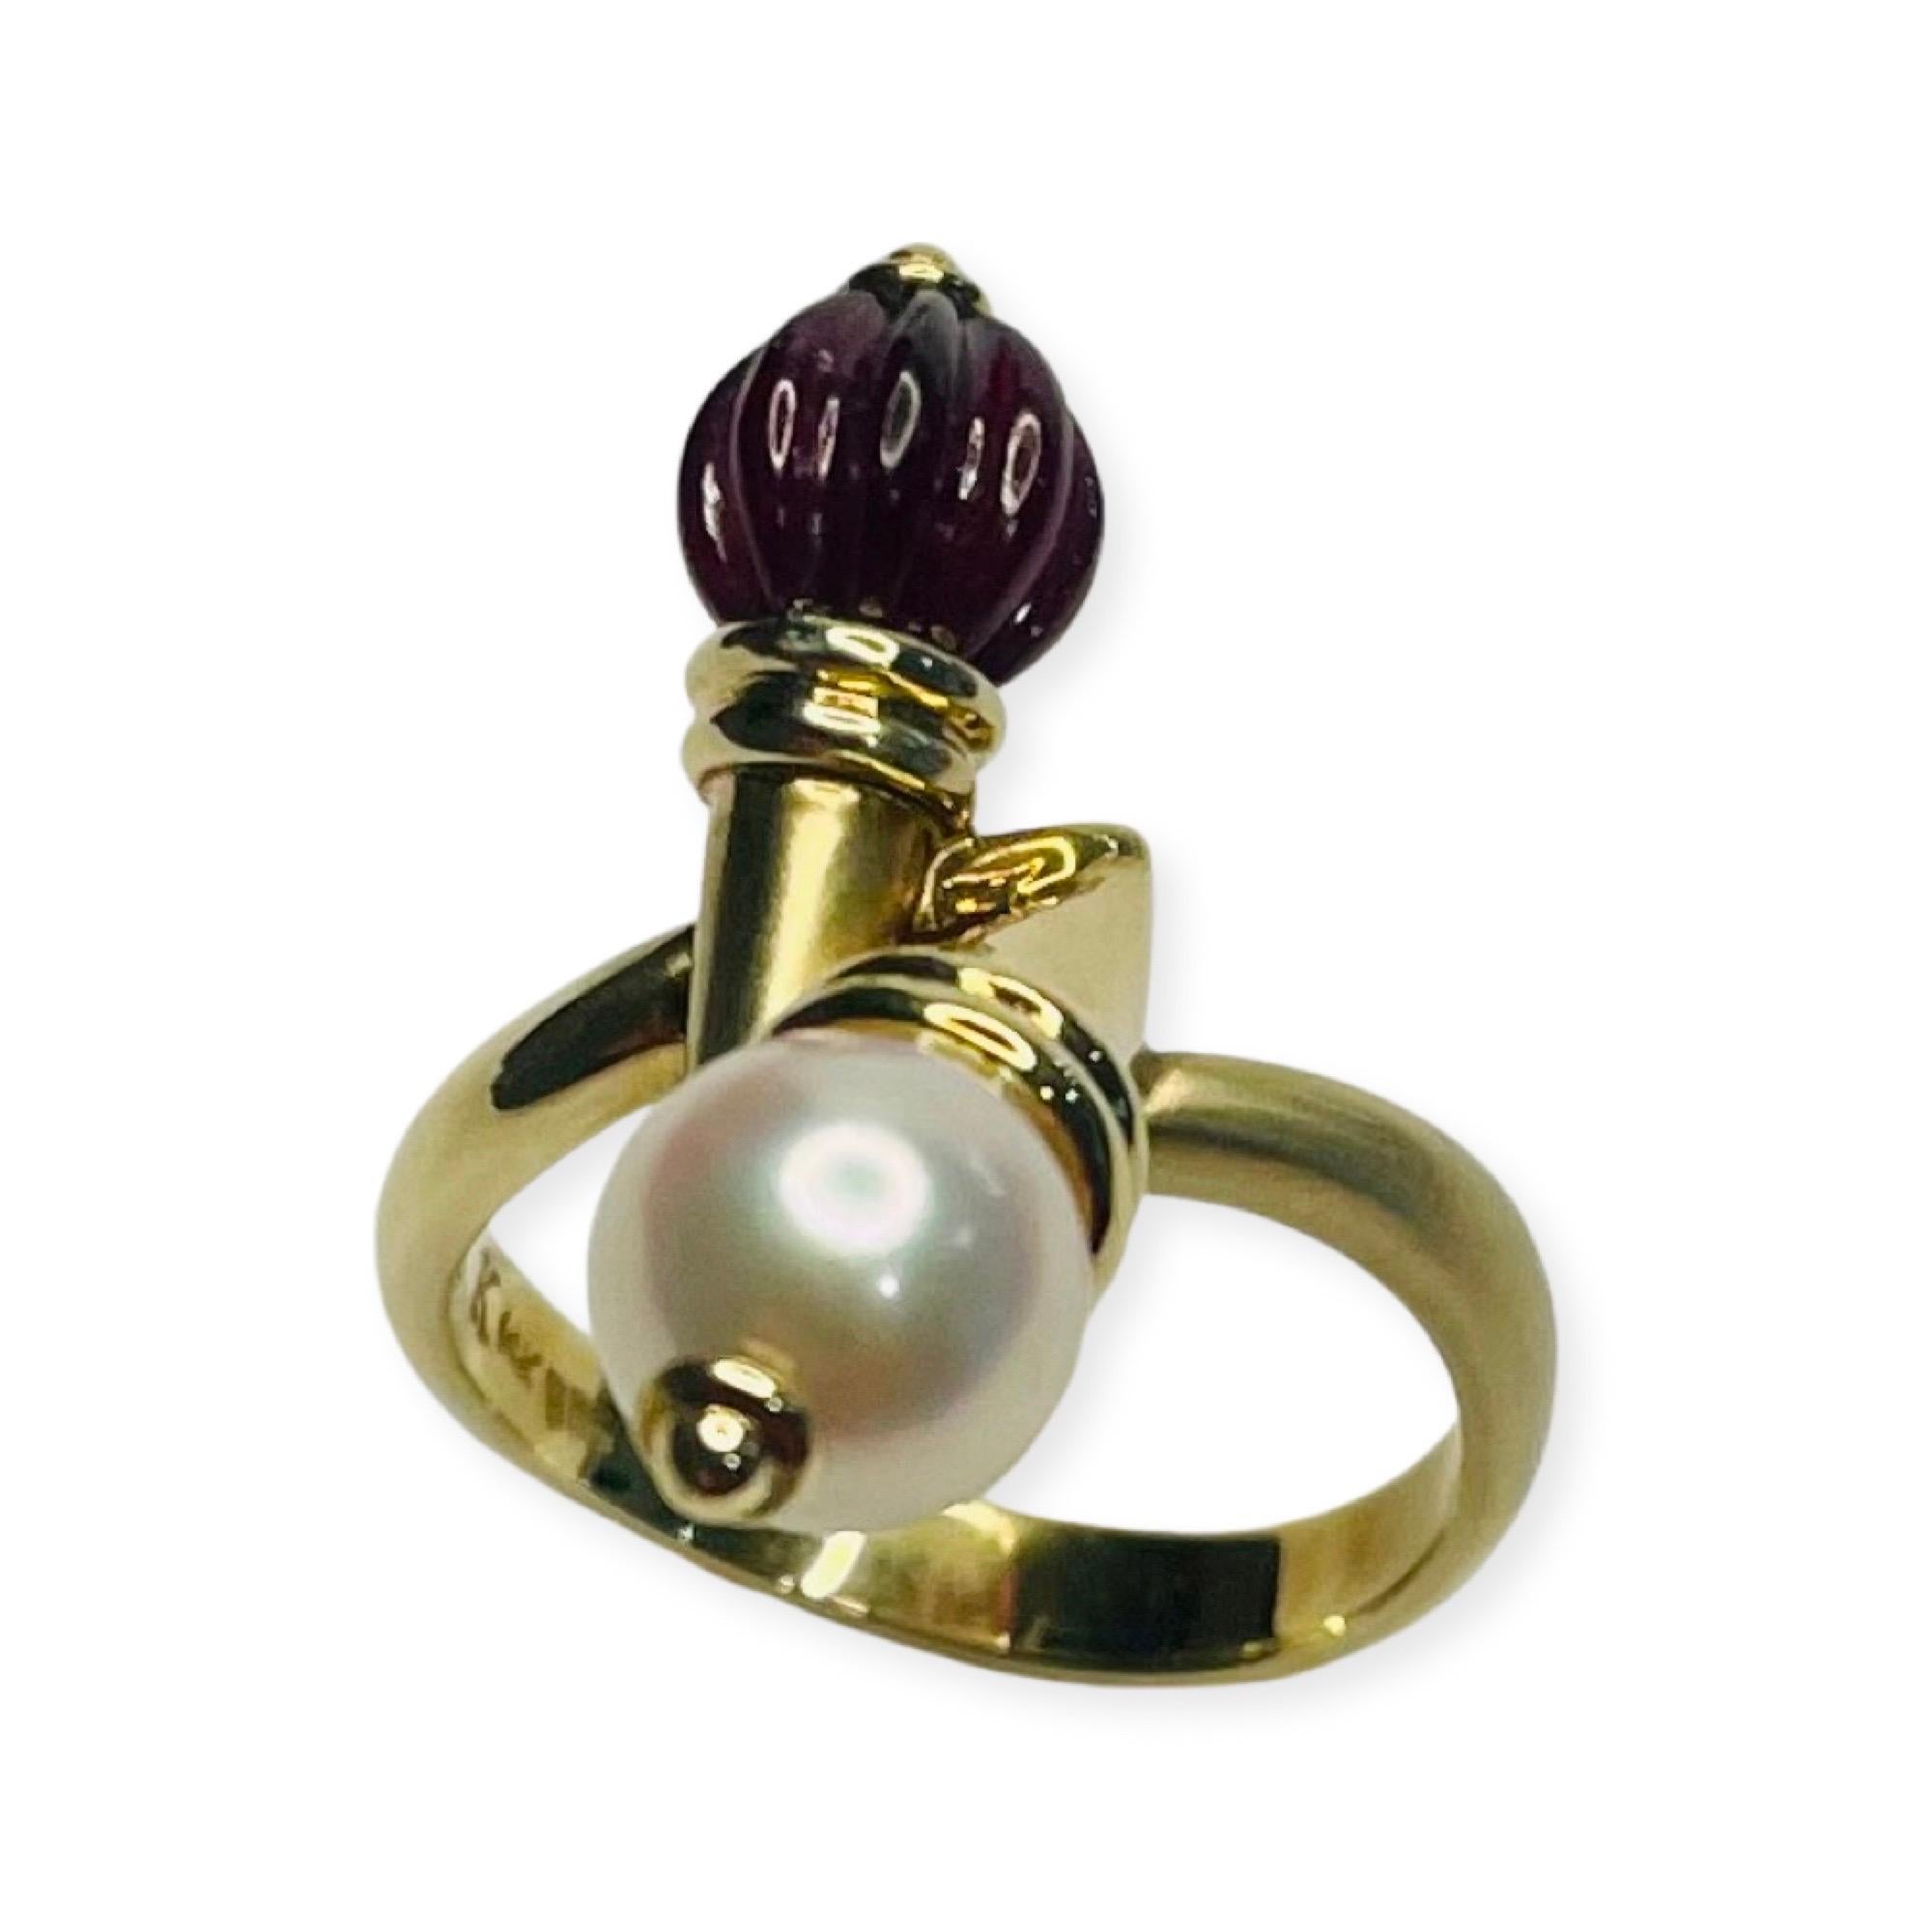 Bague Kian en or jaune 14 carats avec grenat et perle Akoya japonaise de culture. La perle de grenat mesure 6,4 mm et la perle Akoya du Japon 7,3 mm. La perle est ronde avec un lustre élevé et de légères imperfections. La tige mesure 3,2 mm au